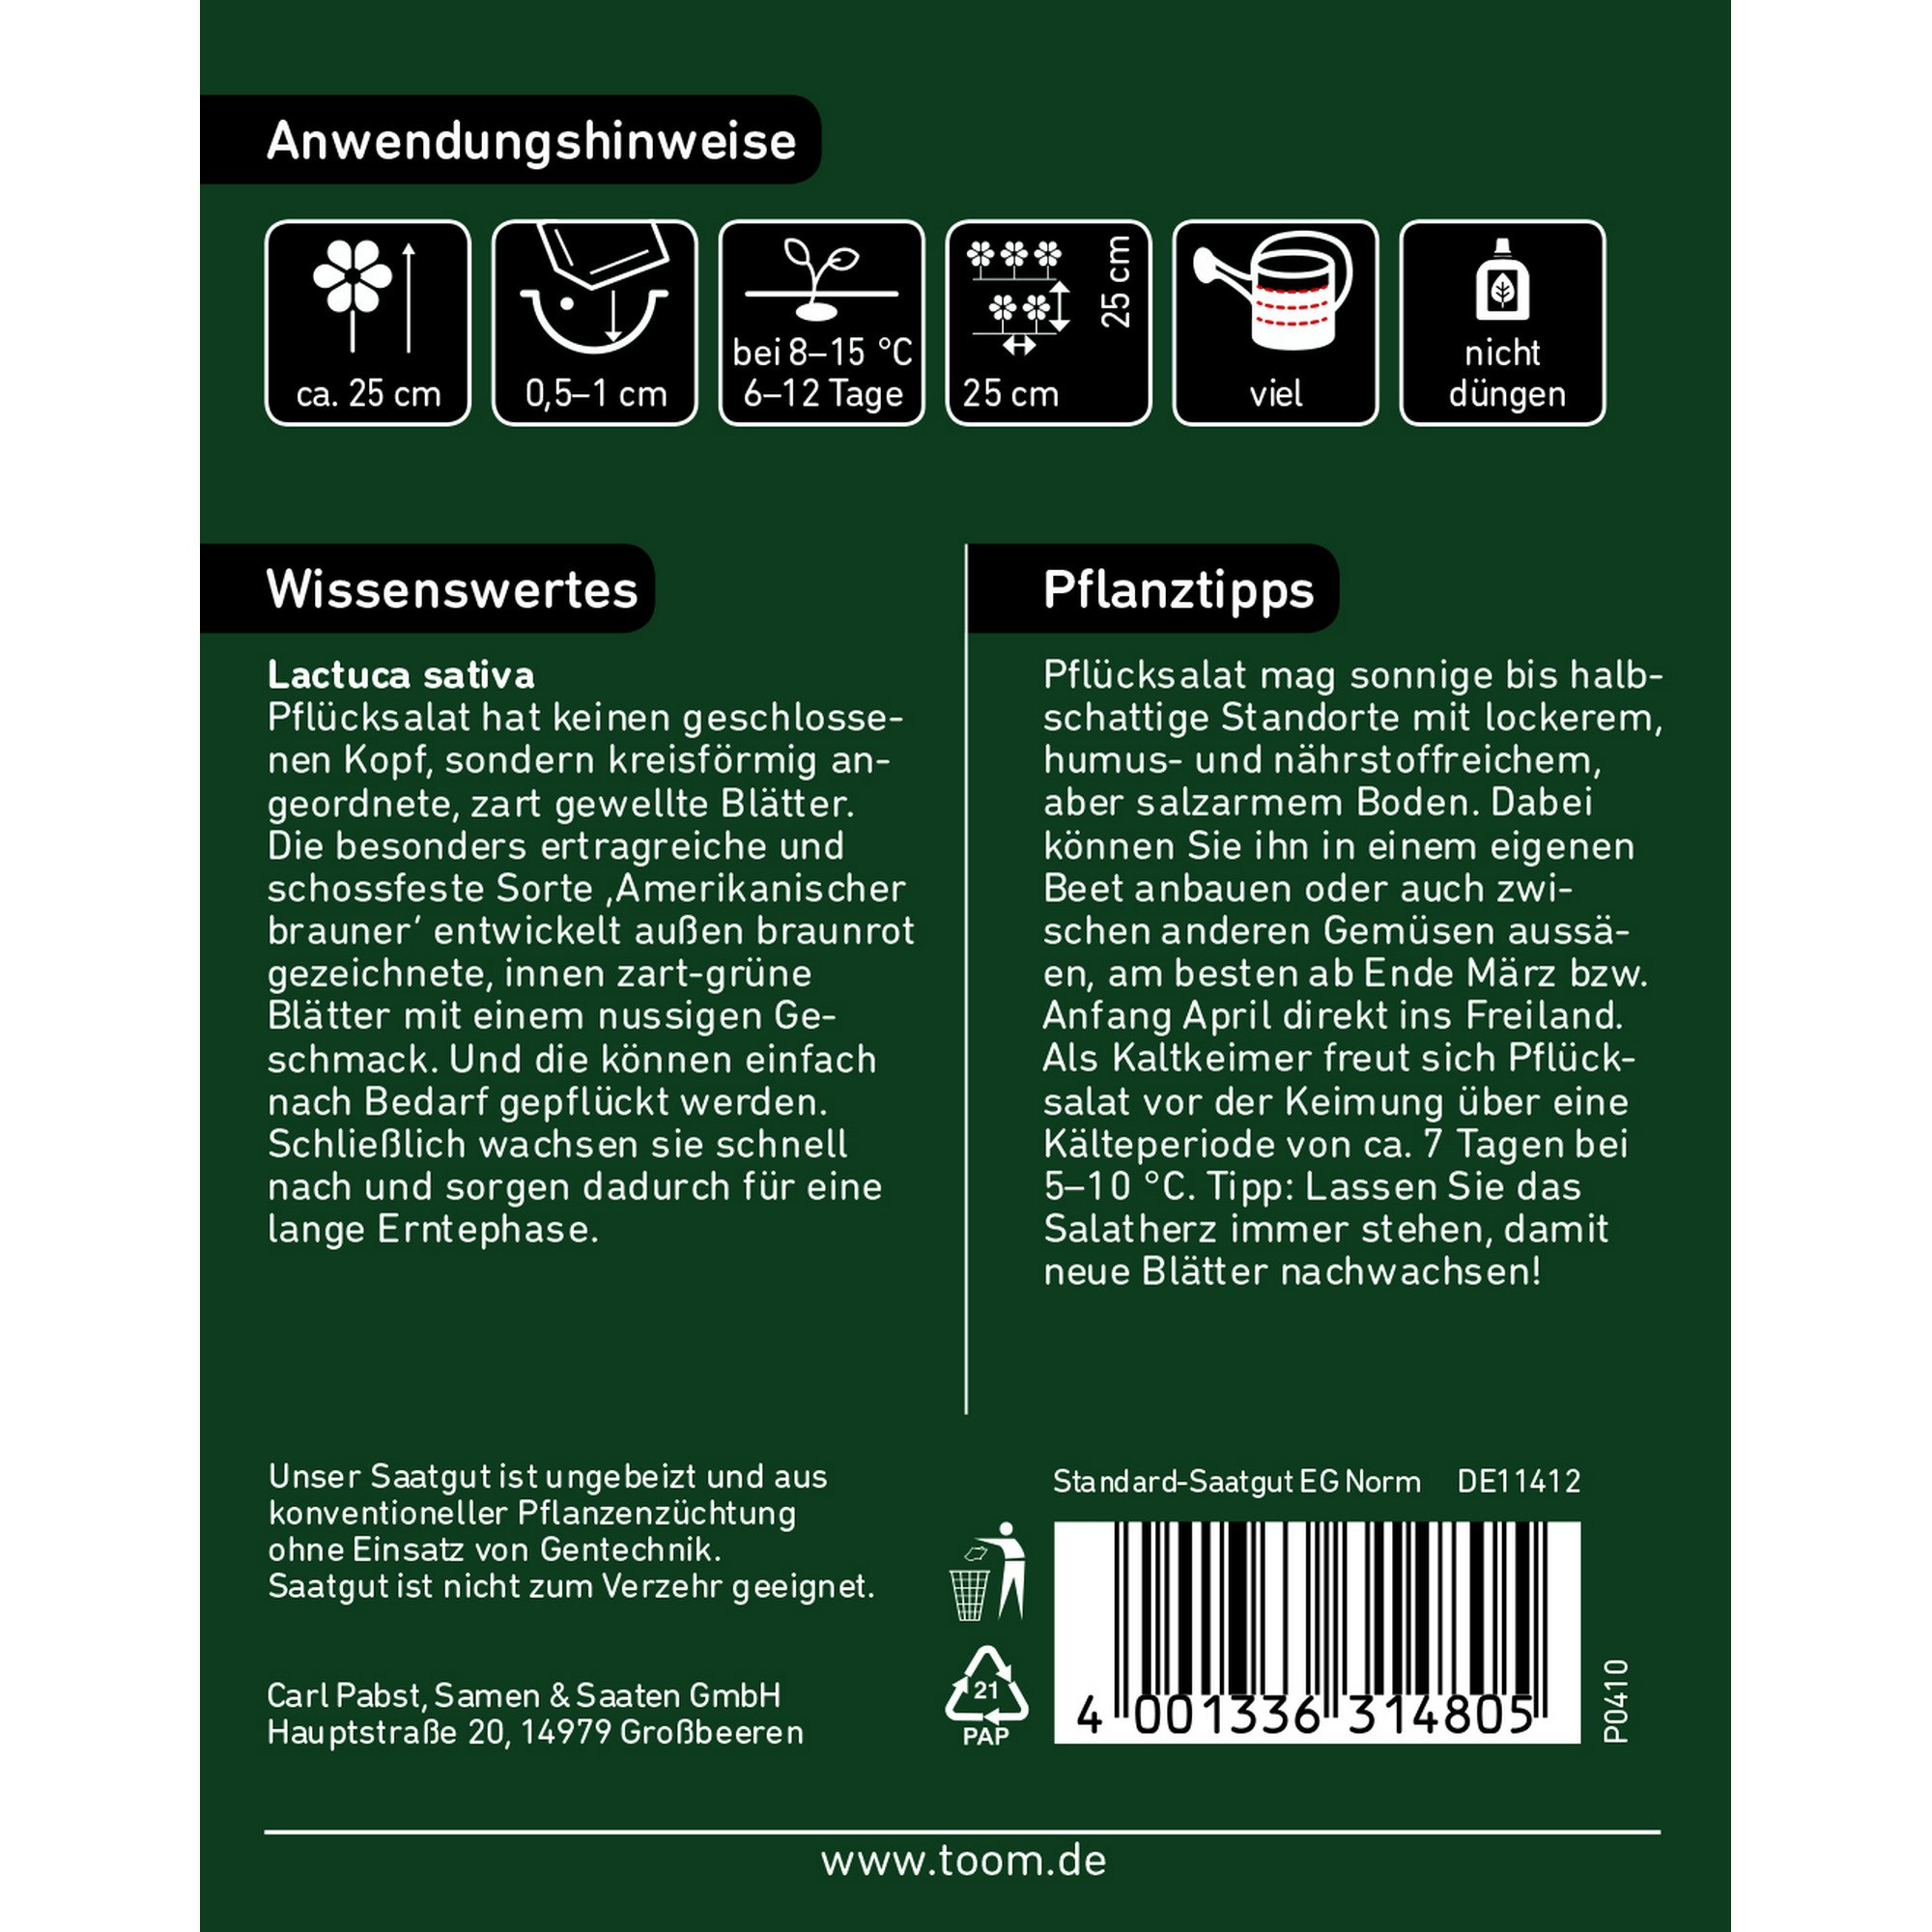 Pflücksalat 'Amerikanischer brauner' + product picture